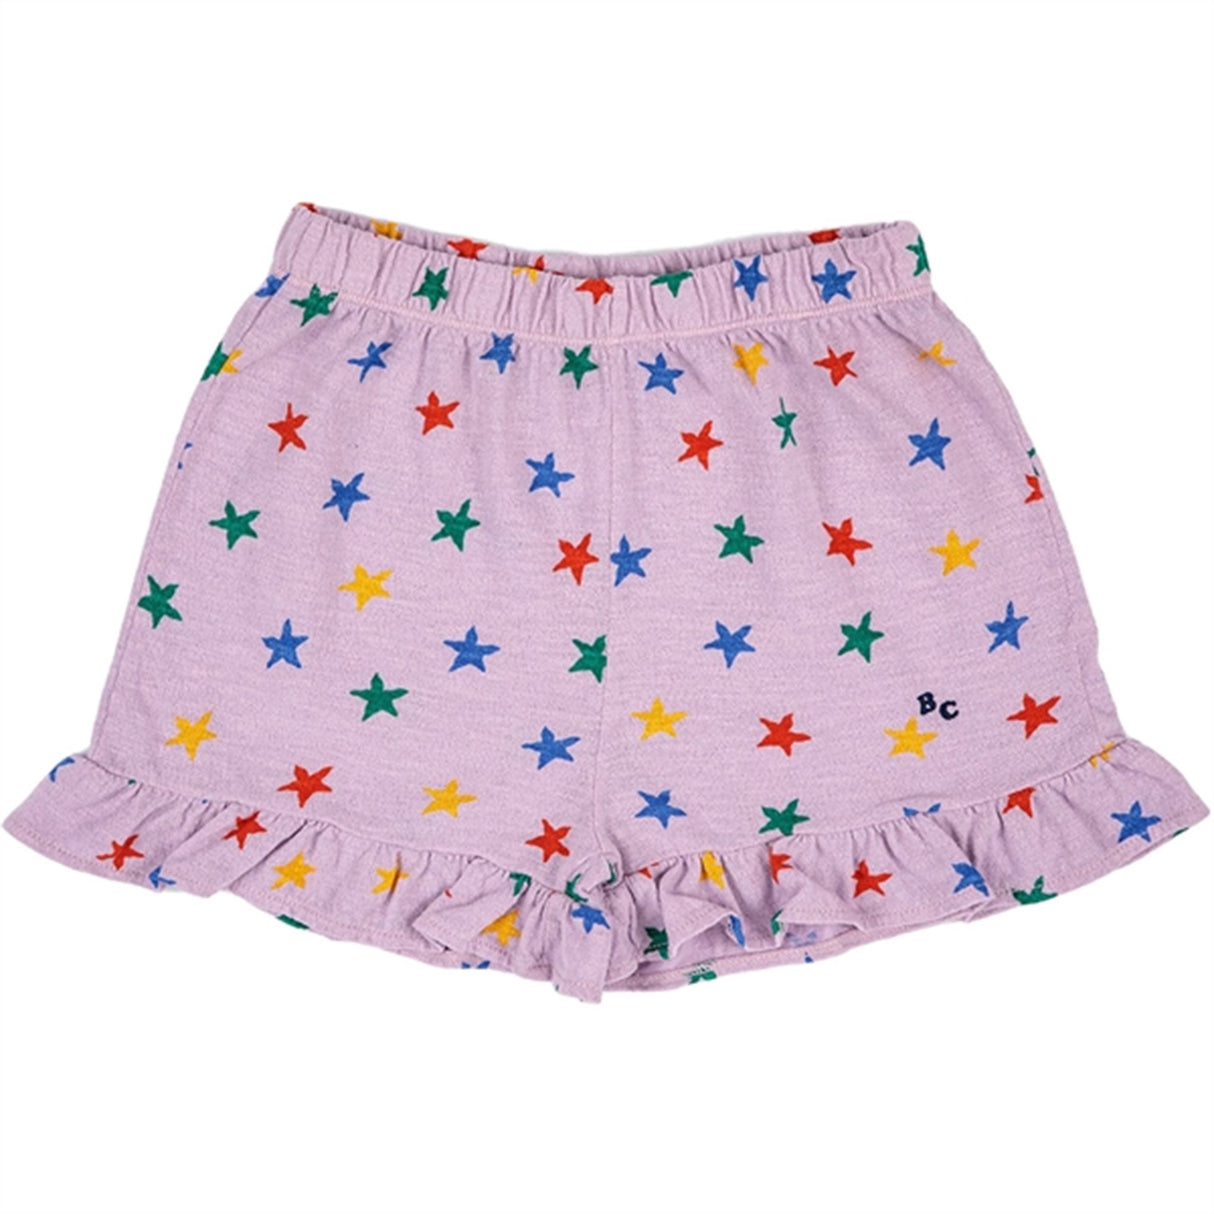 Bobo Choses Lavender Multicolor Stars All Över Frill Shorts